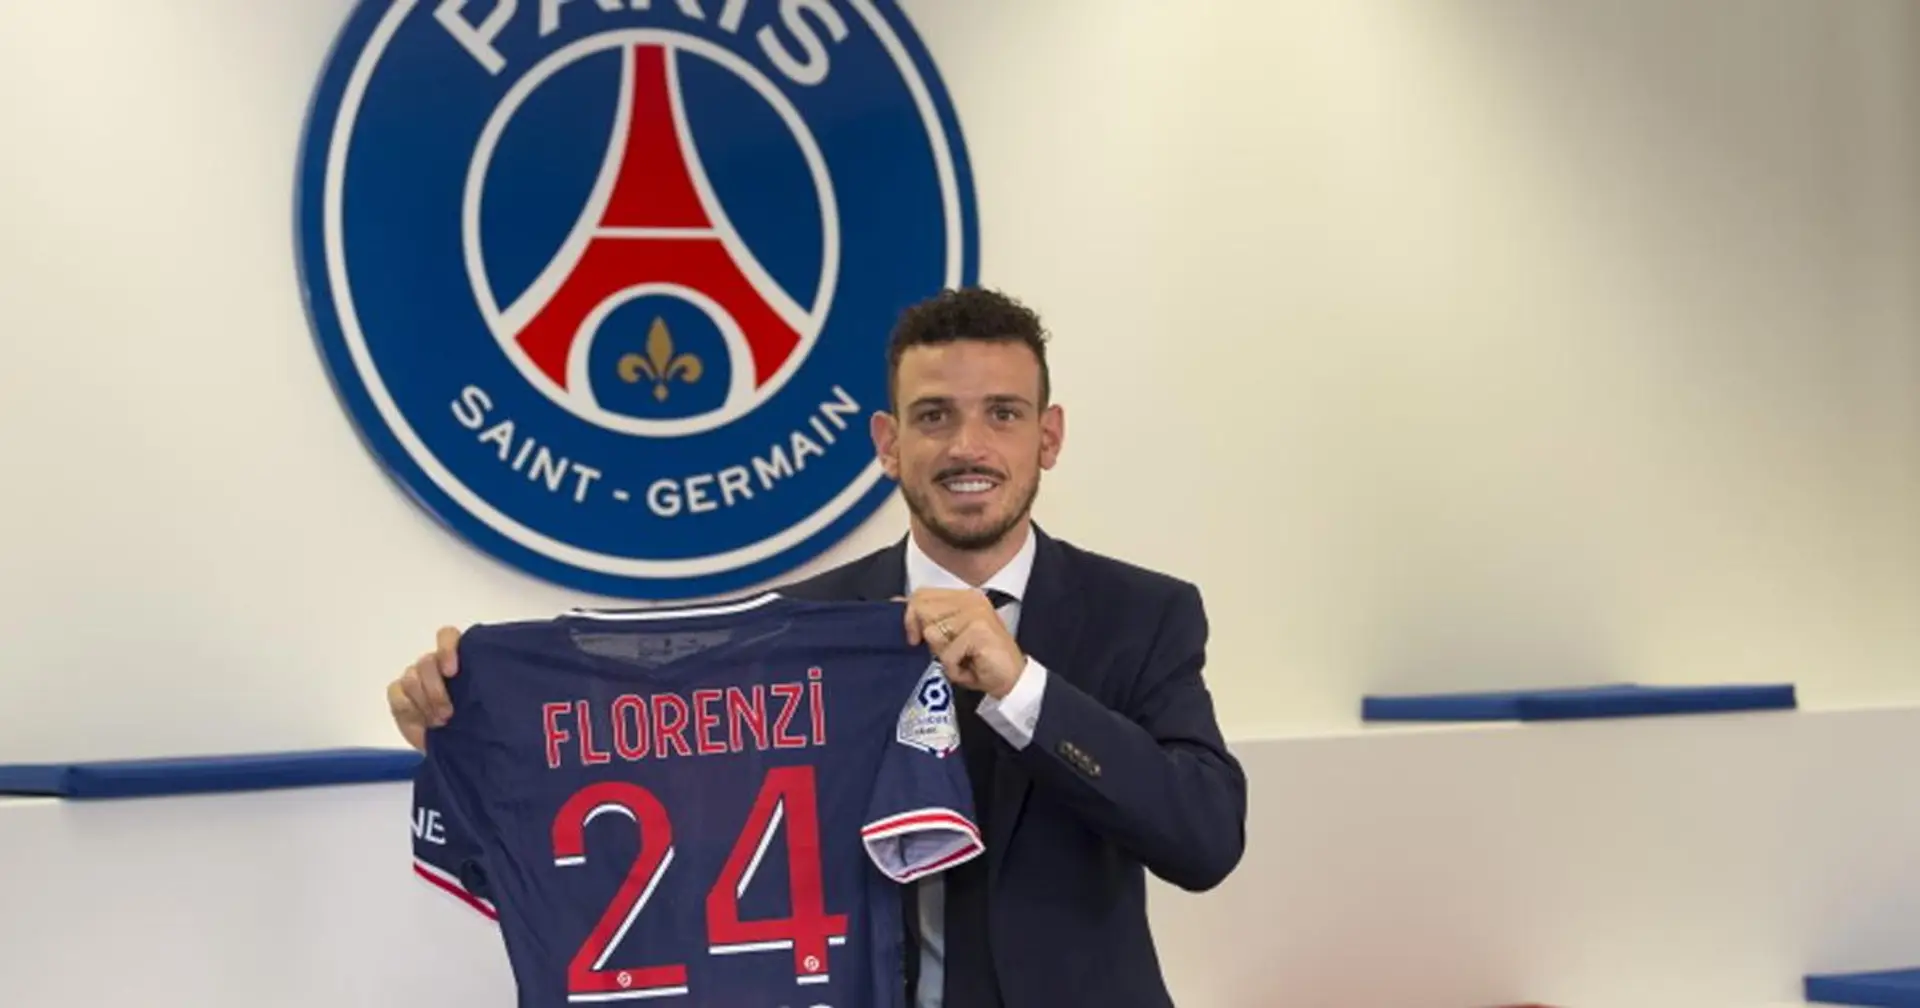  "Je connais quelques joueurs", Florenzi débarque au PSG en terrain connu